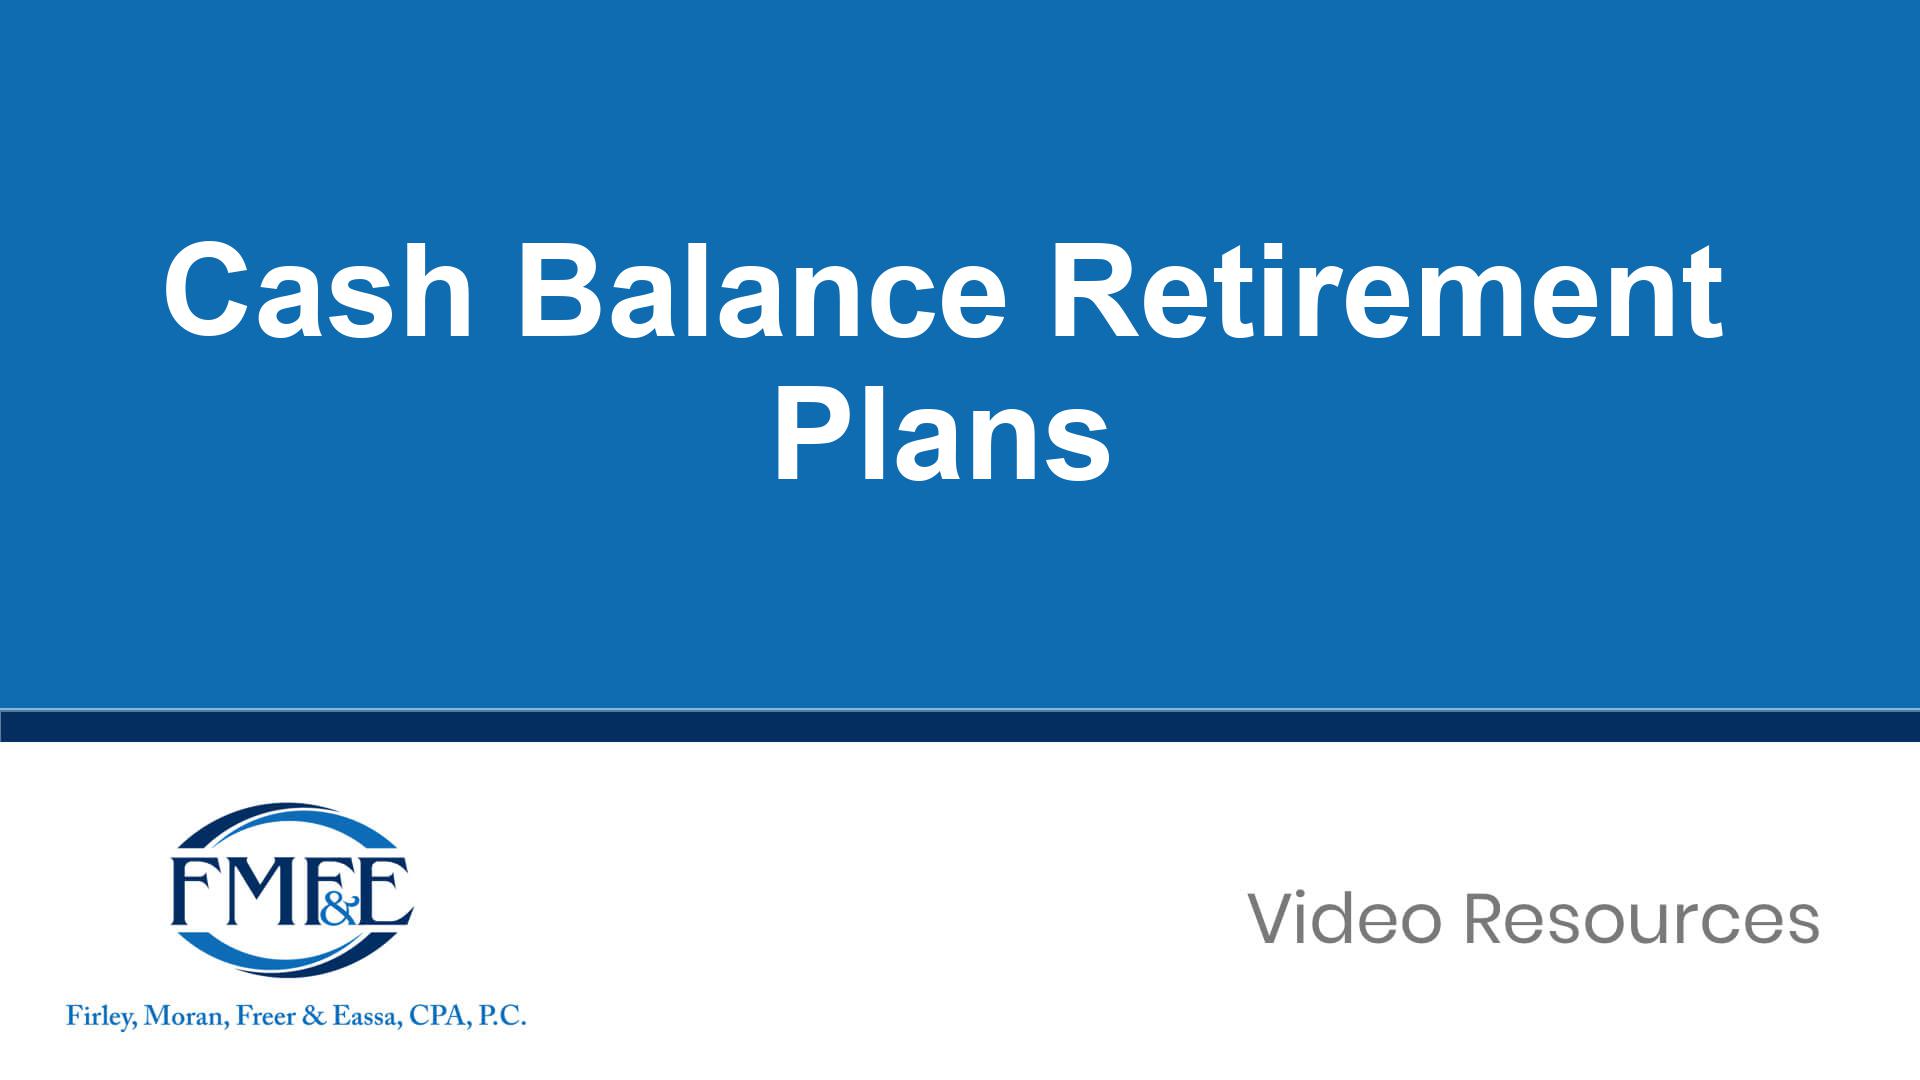 FMFE-VideoCover-Cash-Balance-Retirement-Plans_CT-12477